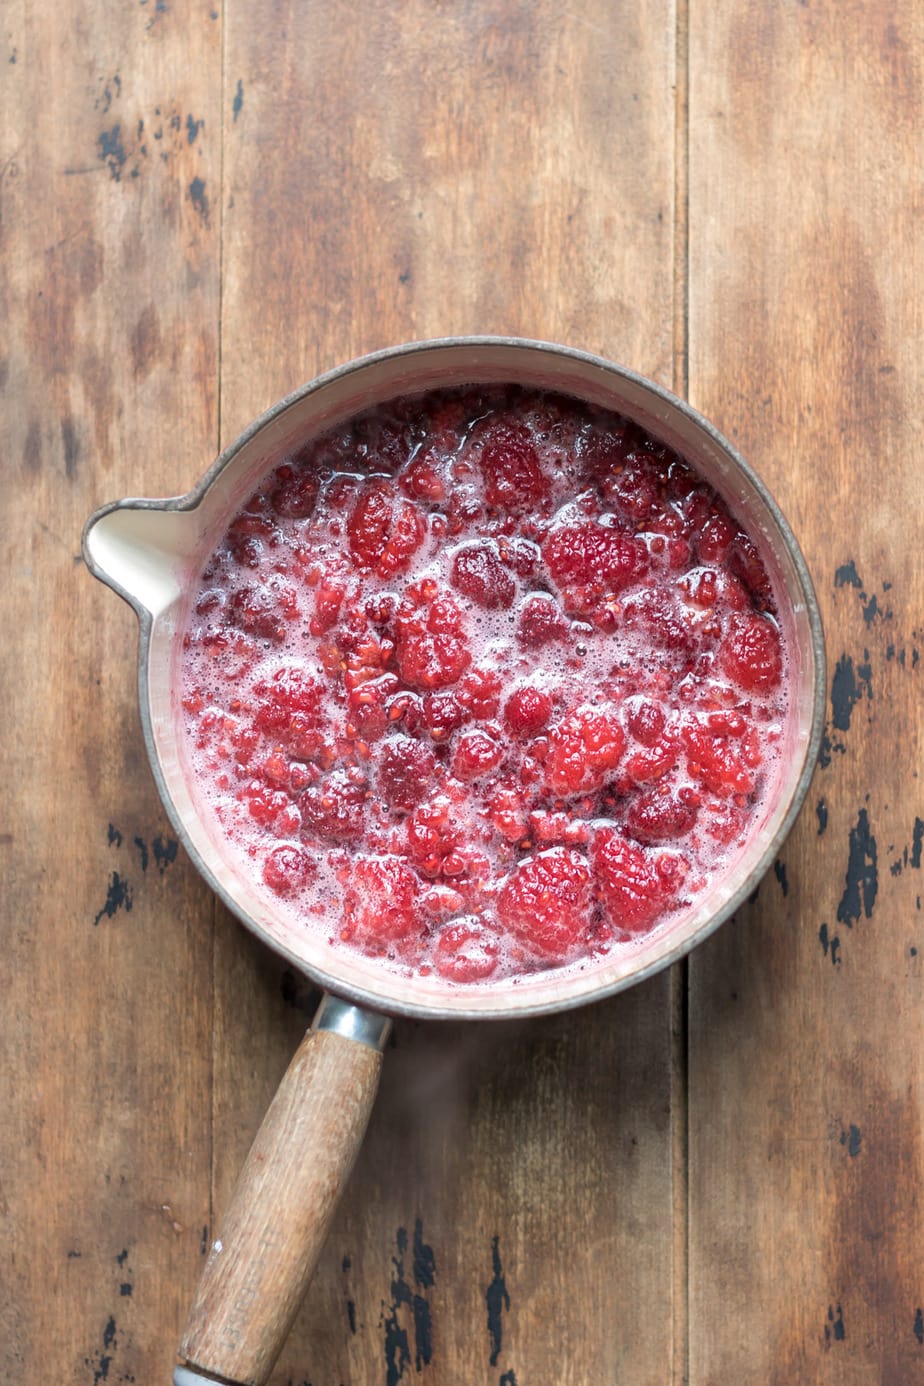 Cooked raspberries in sugar water.